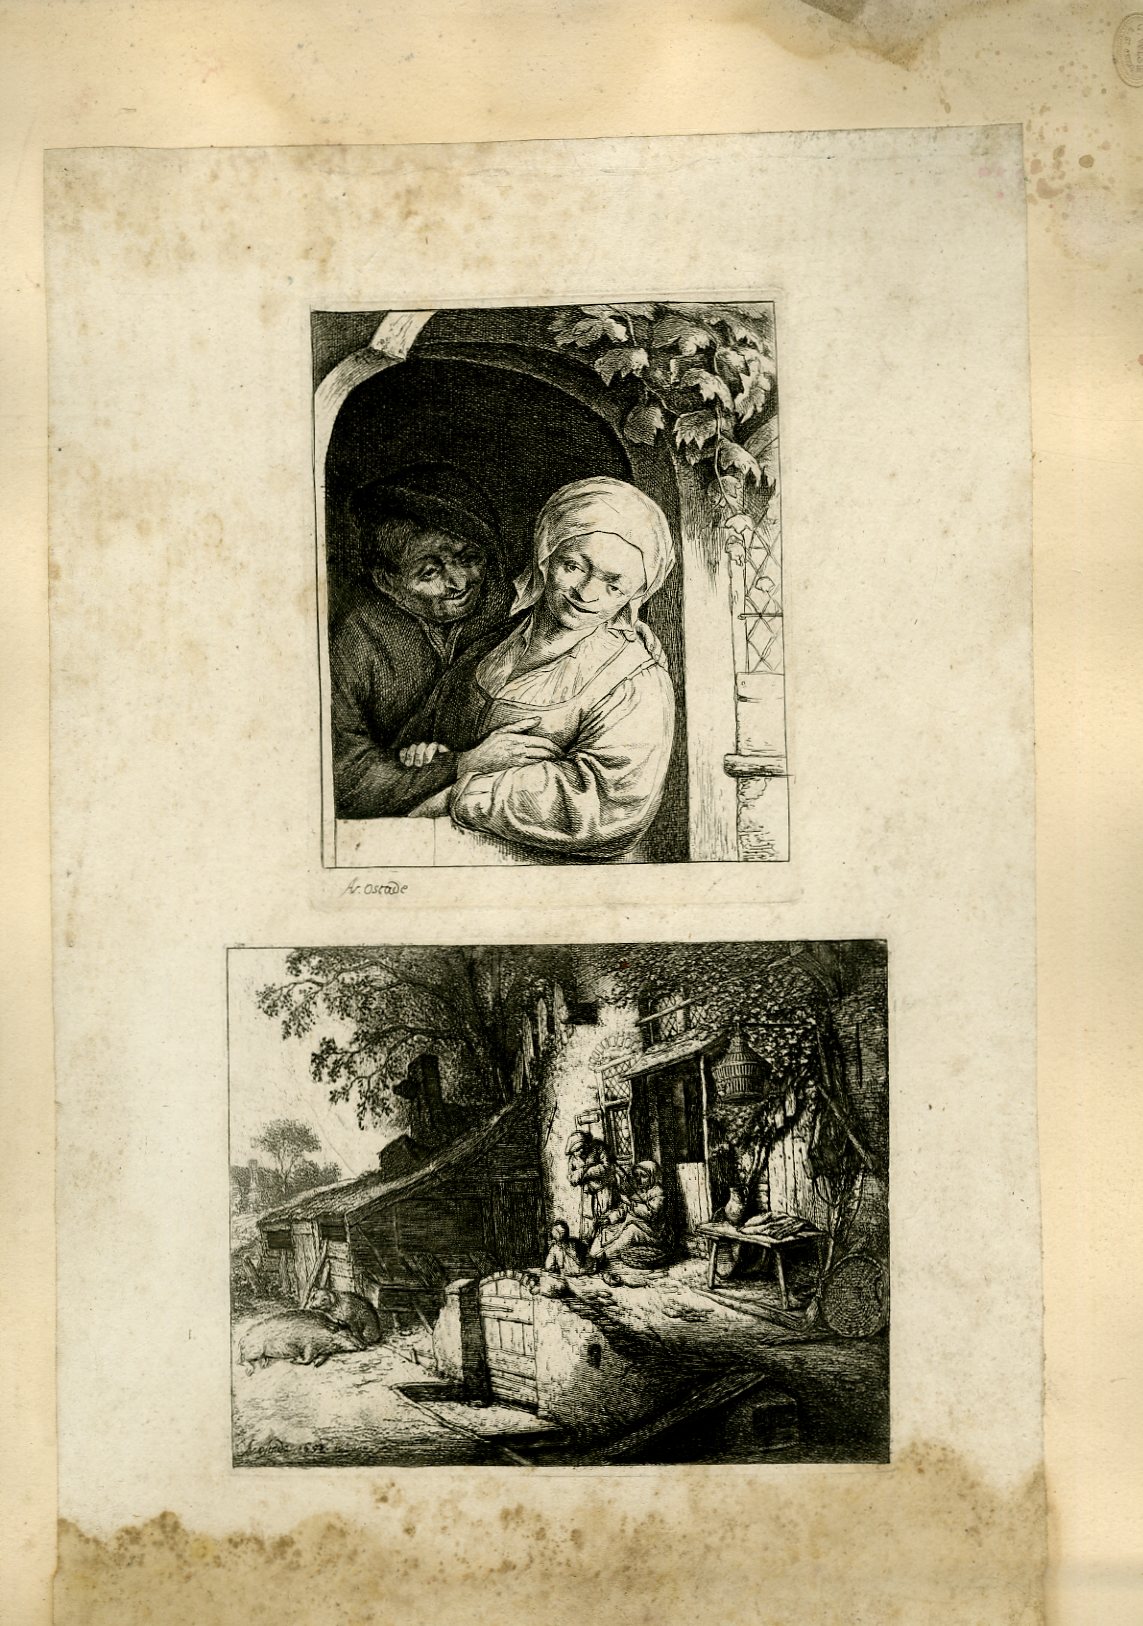 Planche illustre de 2 gravures originales en noir et blanc : Un couple s'enlassant - Vue d'une entre de maison, avec 2 vieilles dames passant le temps, et un chien surveillant la carcasse d'un sanglier.